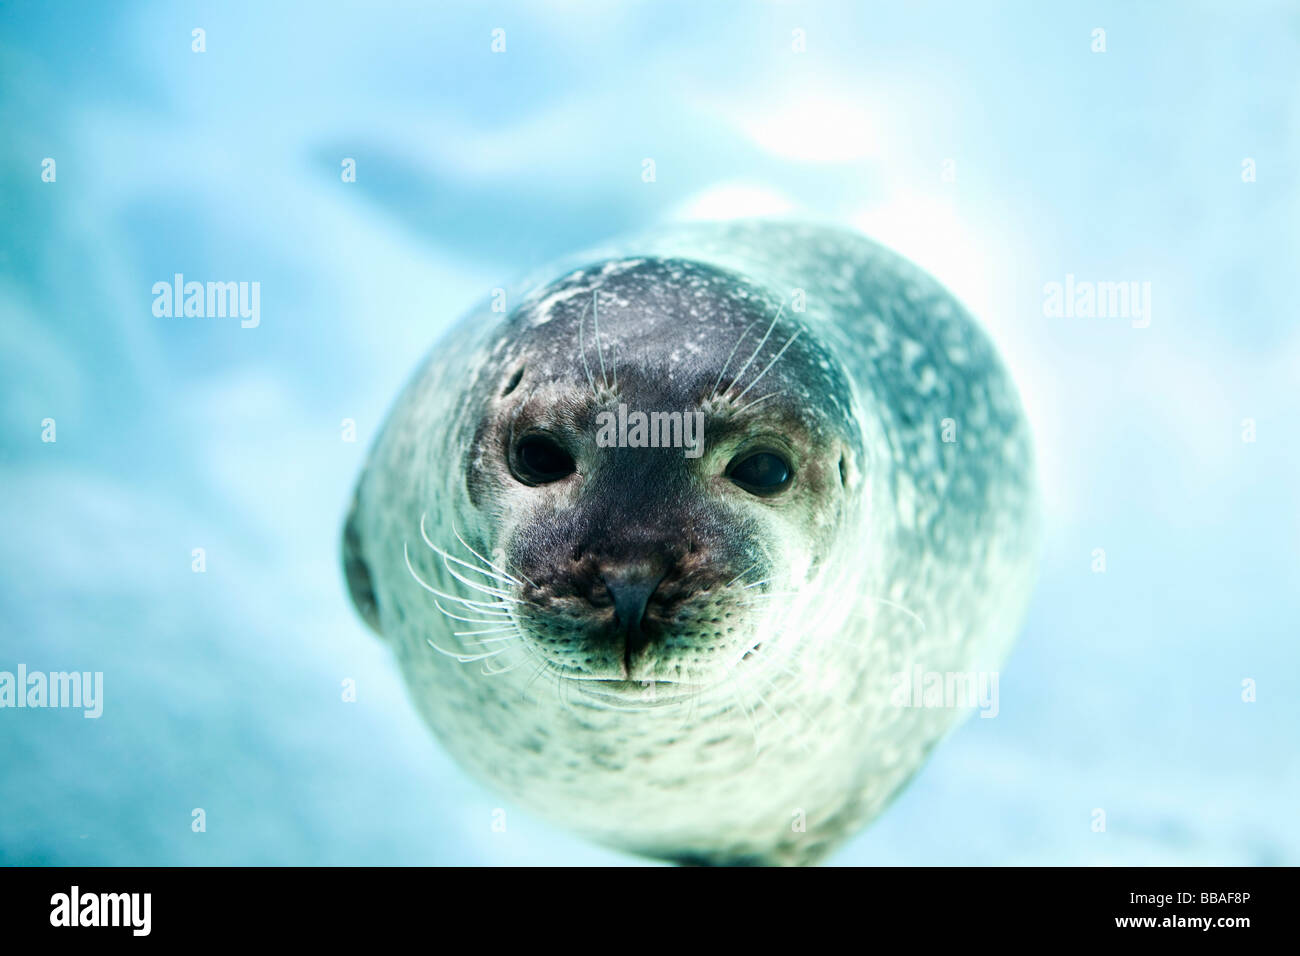 A seal Stock Photo